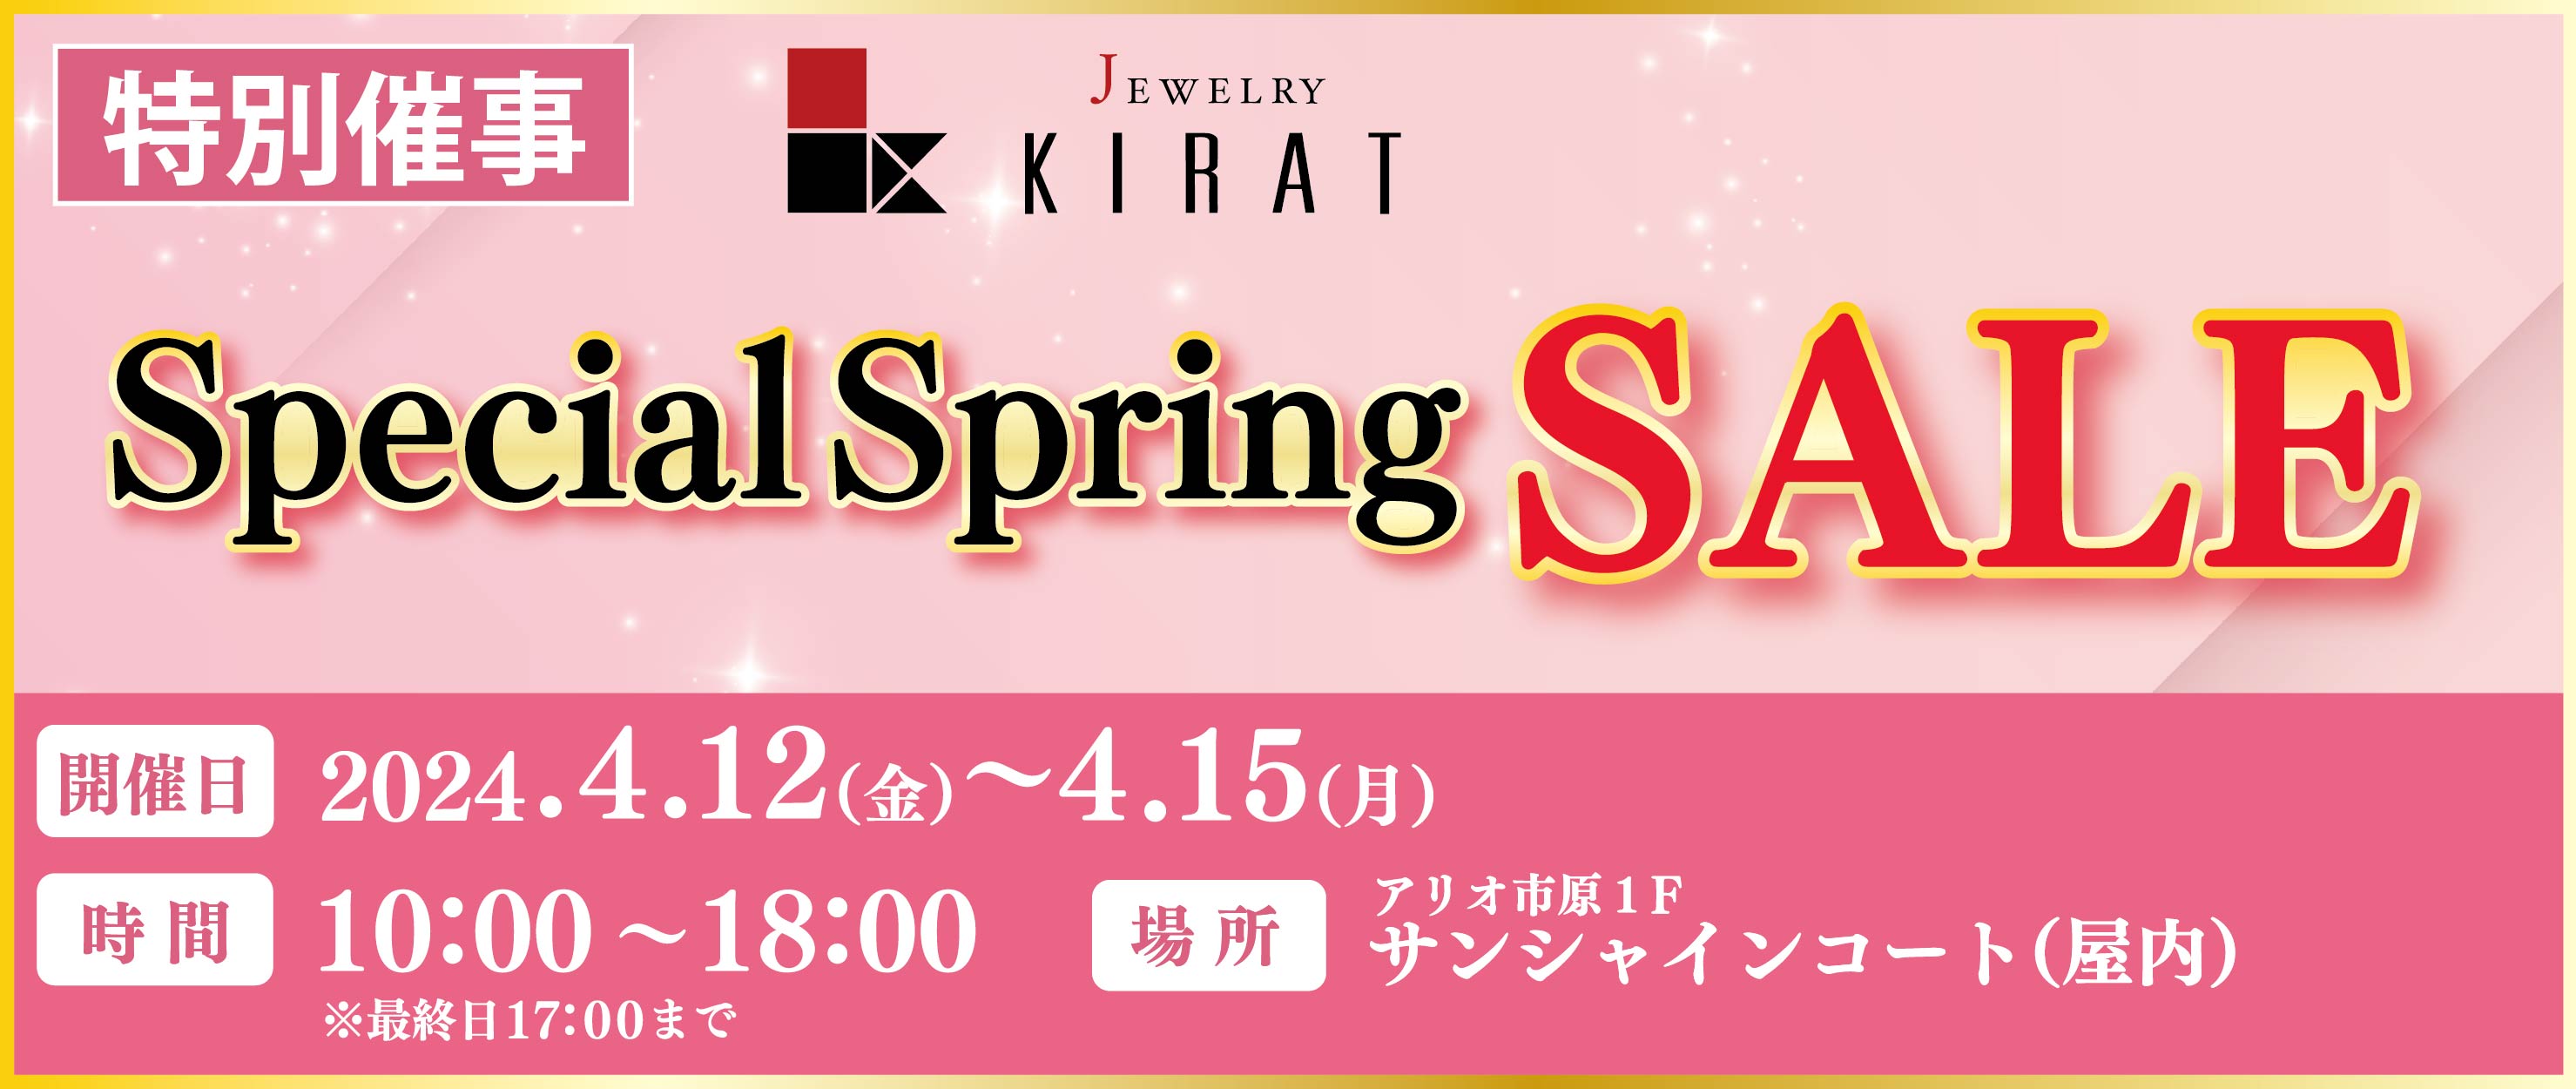 【特別催事】KIRAT SpecialSpring Sale